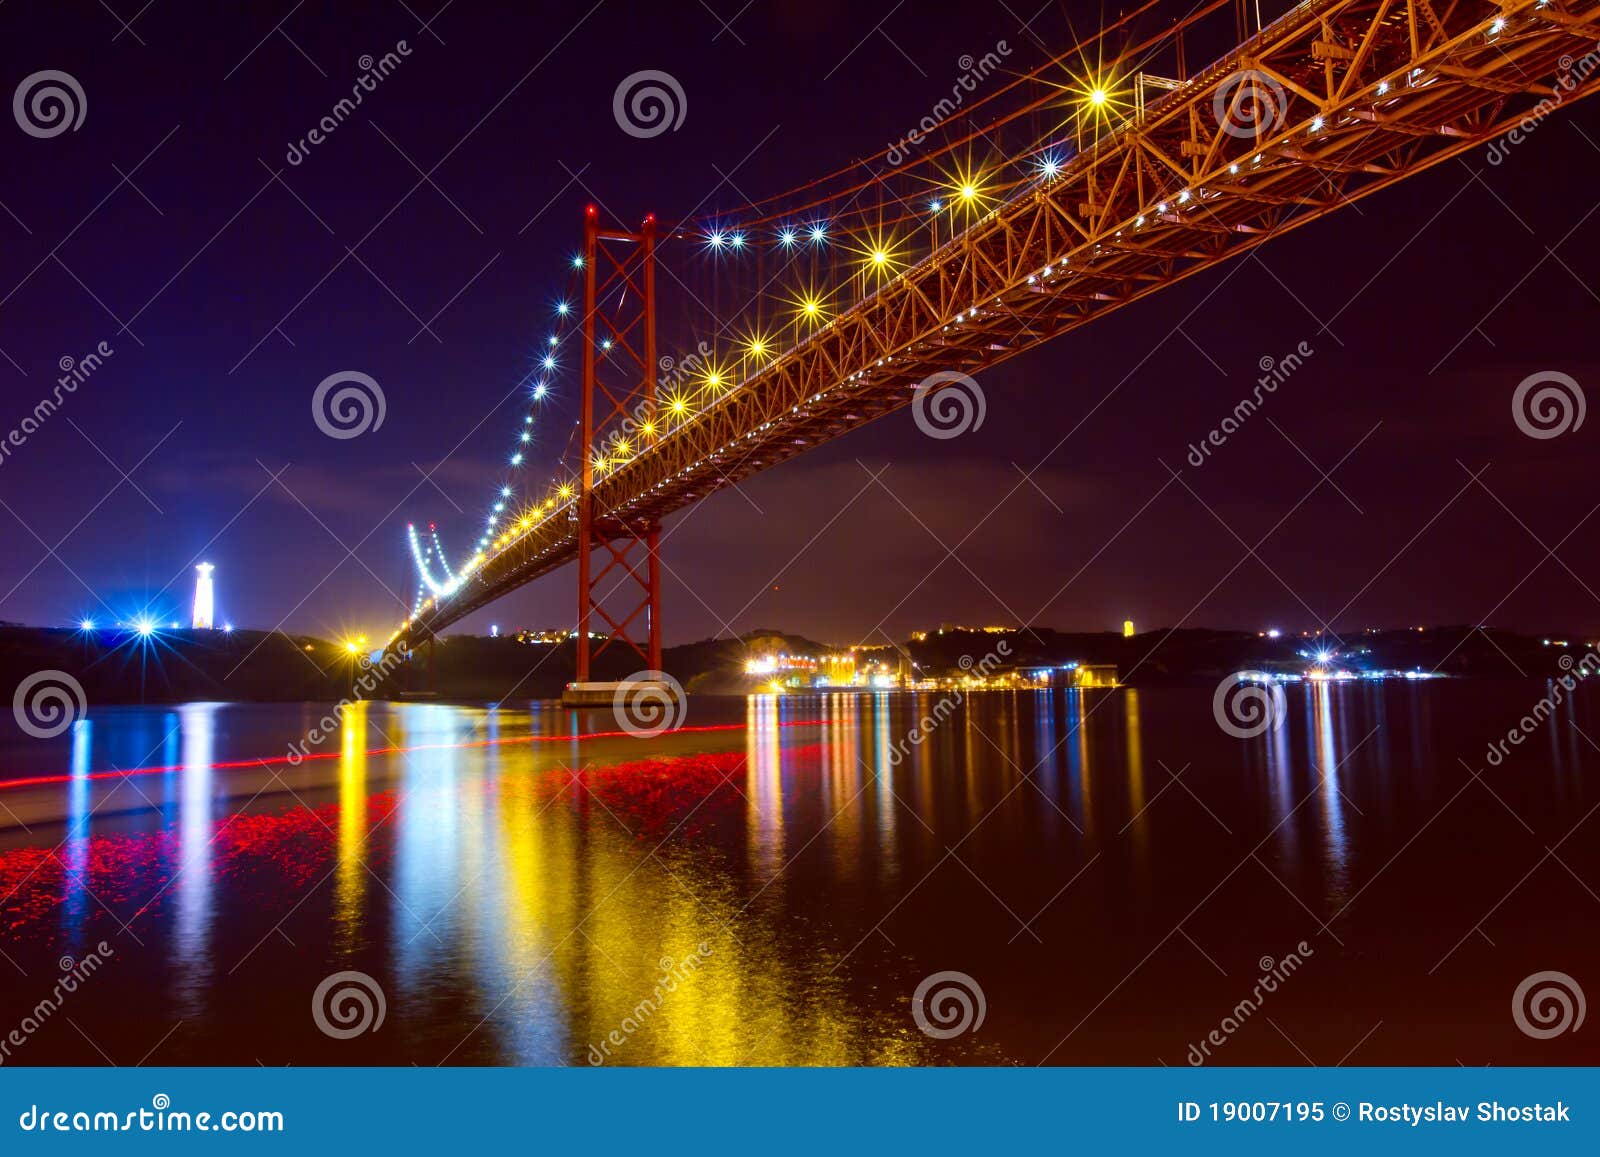 the 25 de abril bridge in lisbon